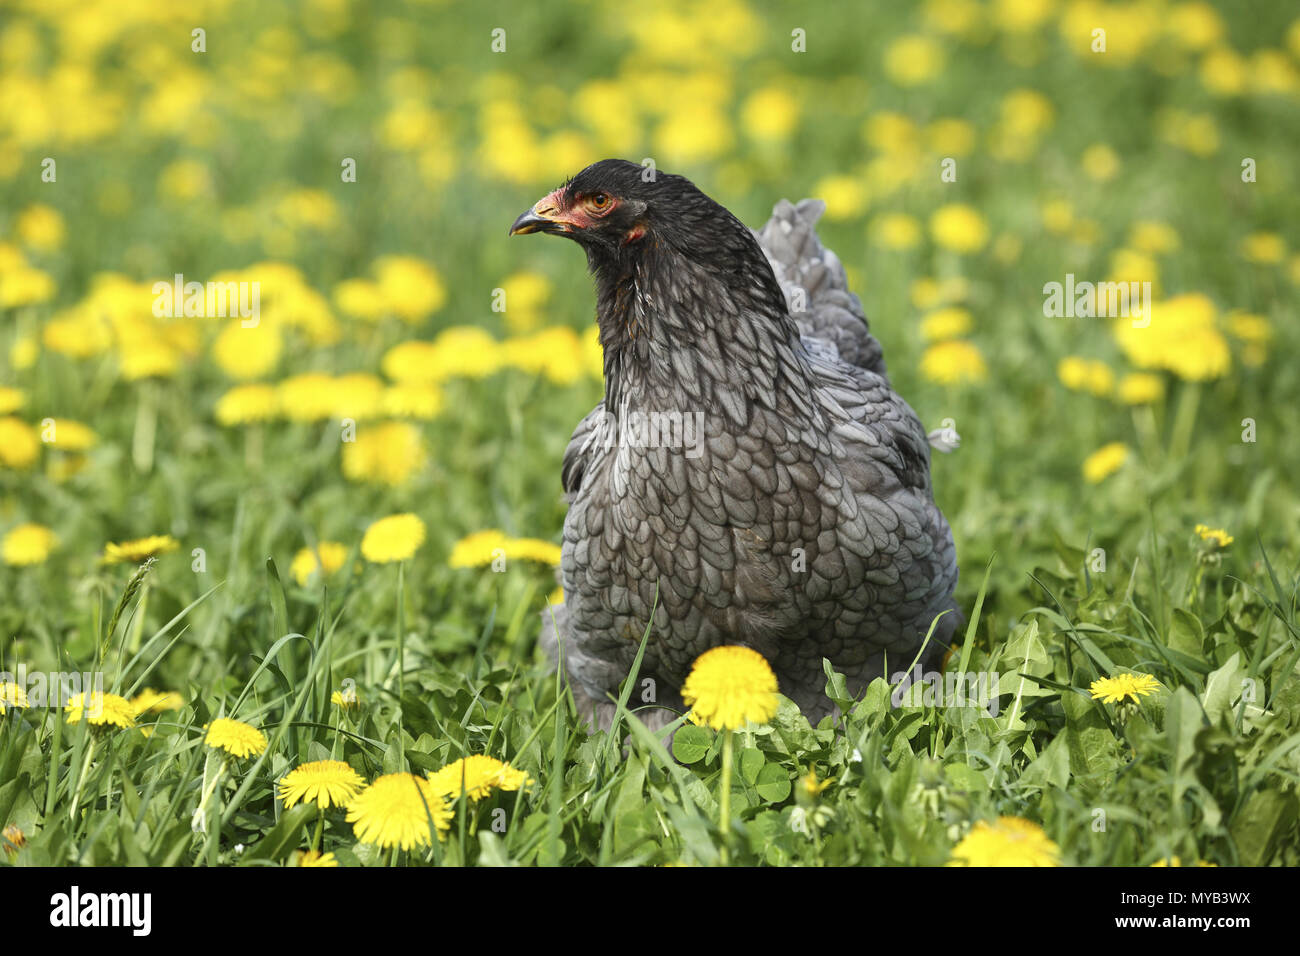 Domestic Chicken, breed: Partridge Brahma. Hen in a meadow with Dandelion flowers. Germany Stock Photo